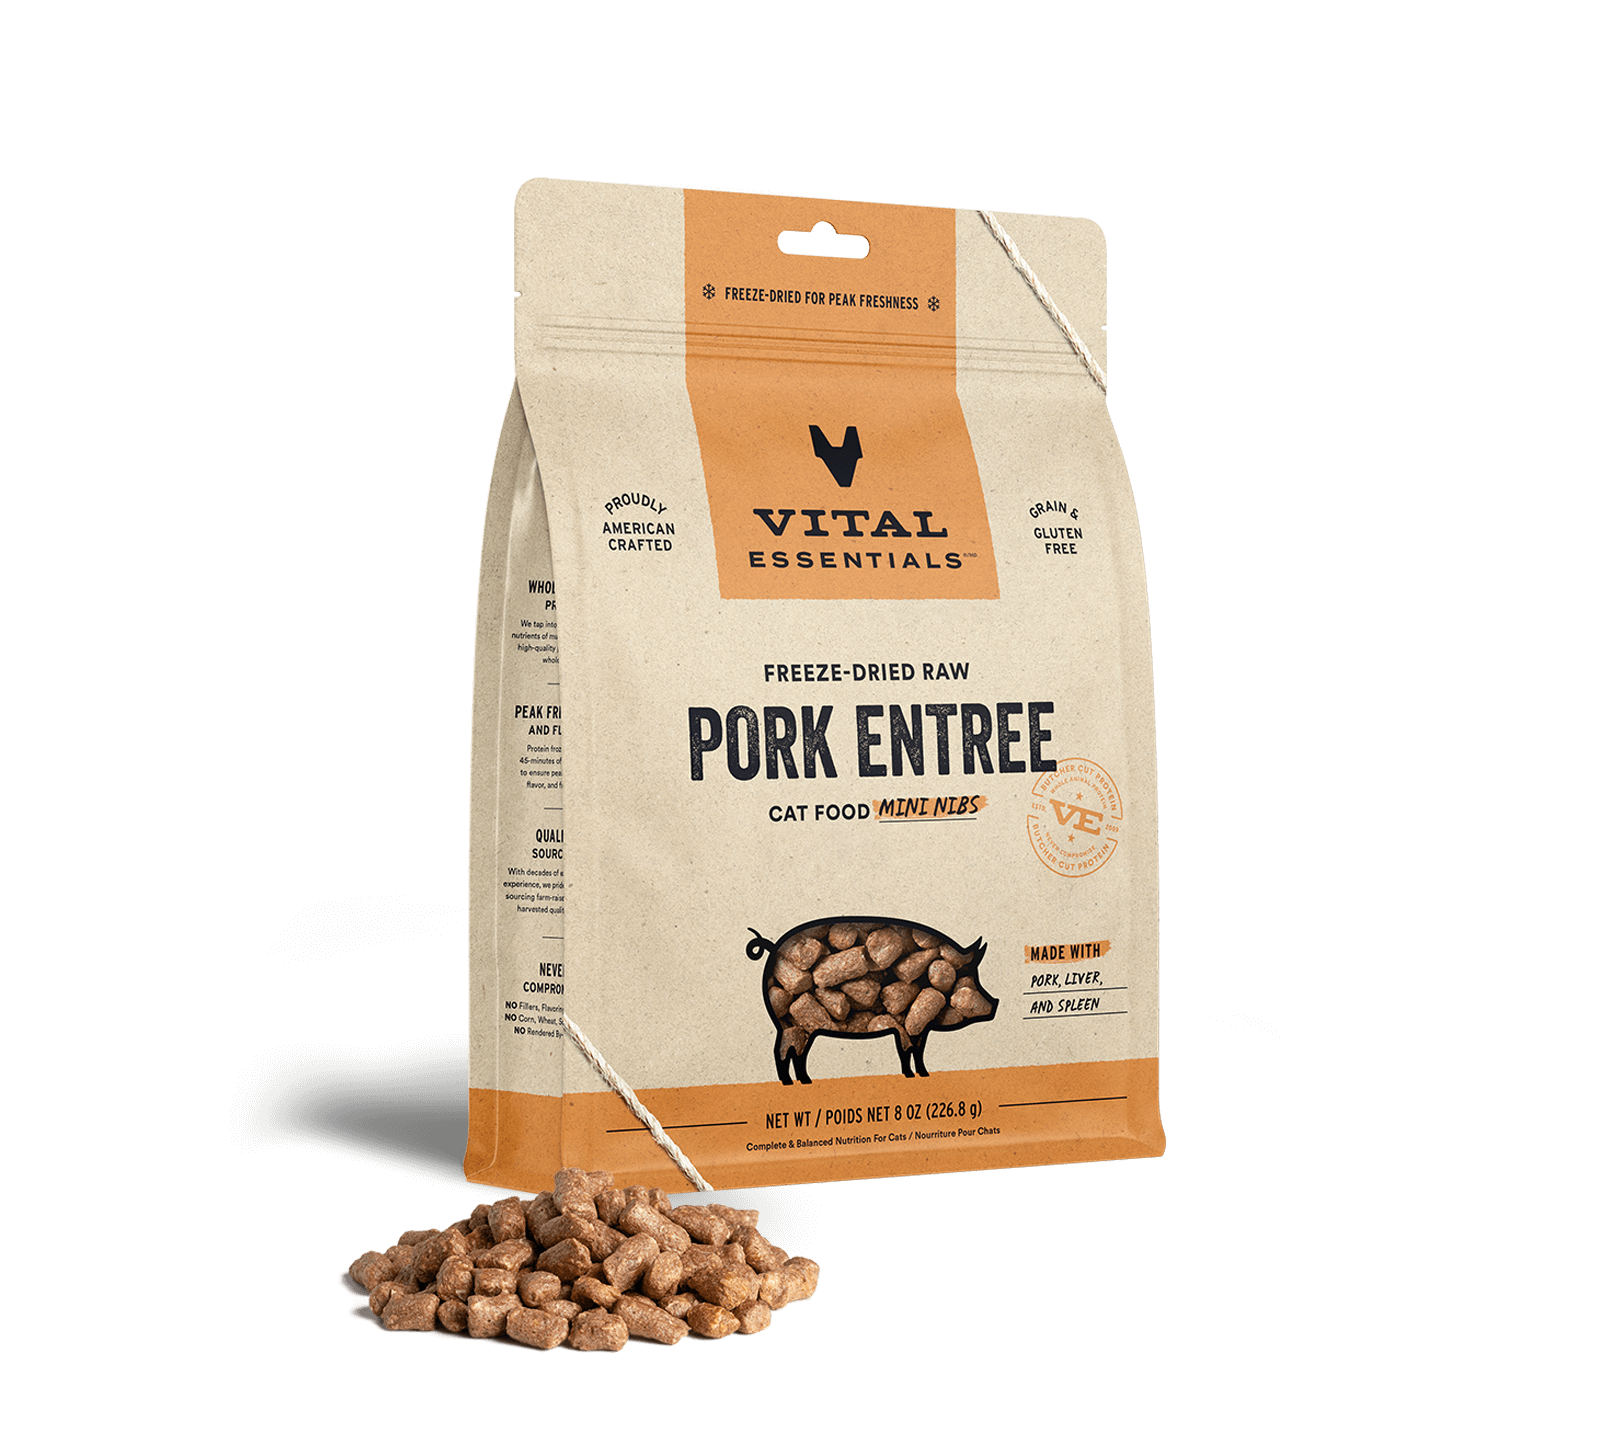 Vital Essentials Freeze-Dried Raw Pork Entree Cat Food Mini Nibs, 8 oz - Items on Sale Now